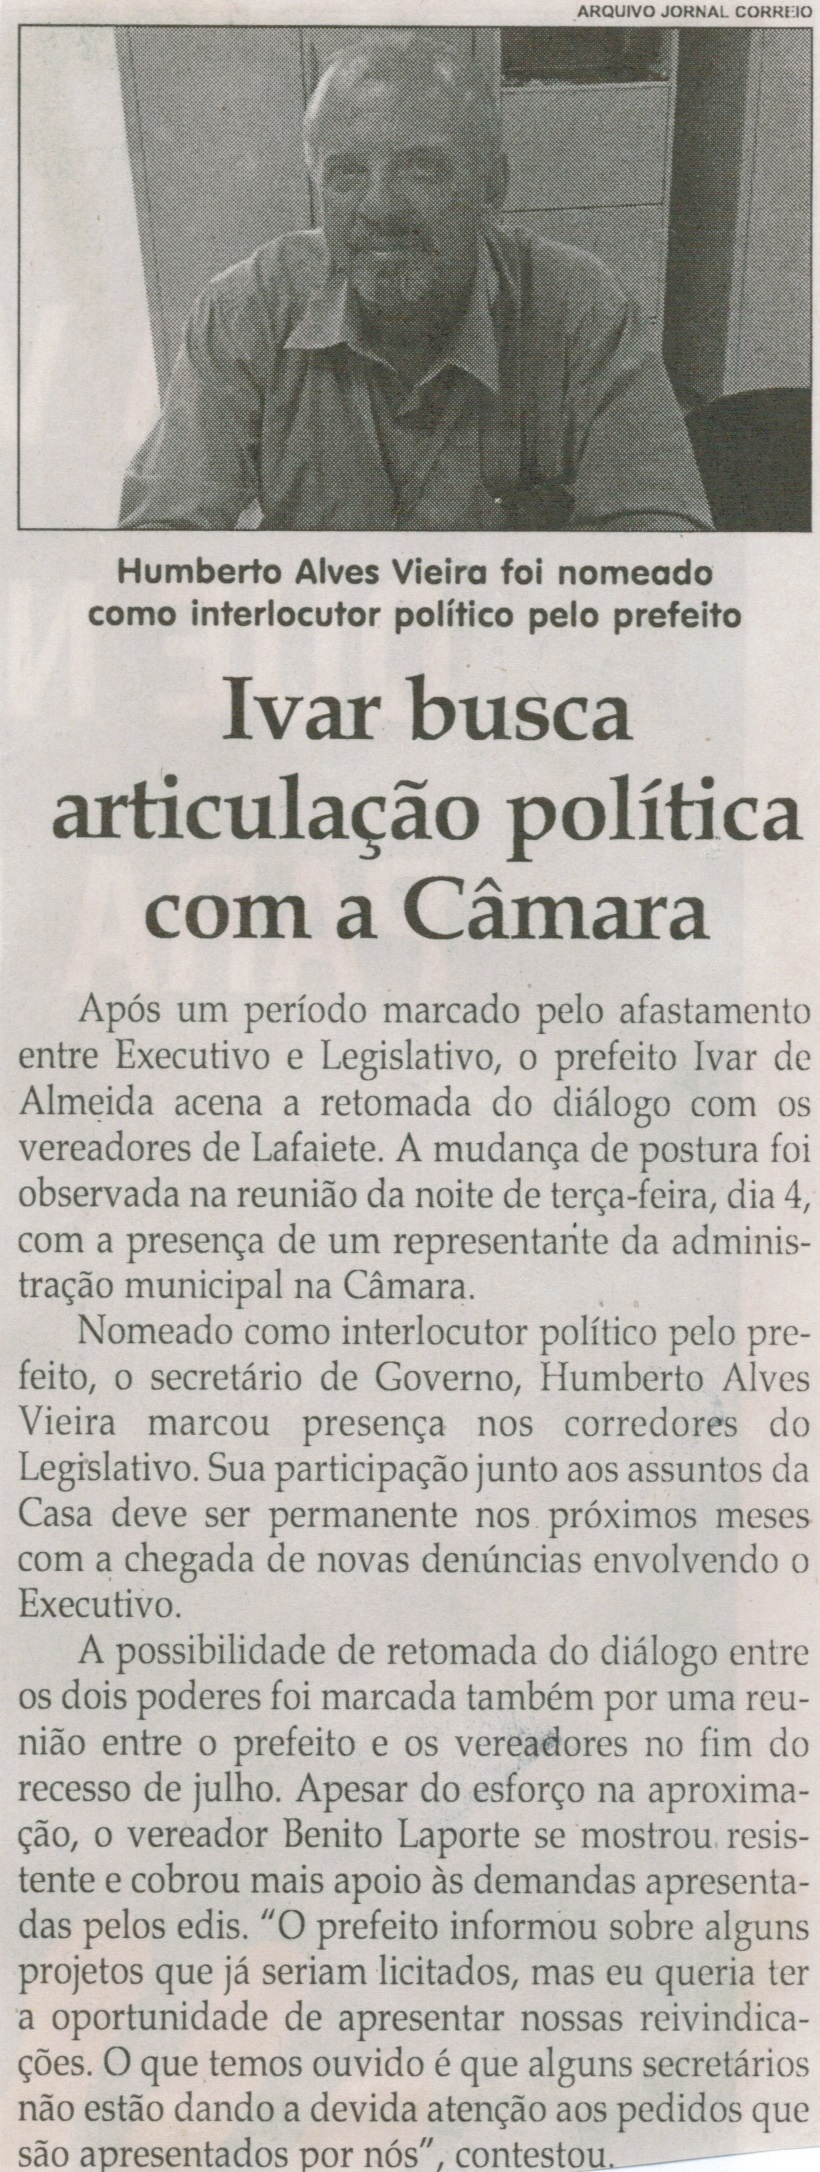 Ivar busca articulação política com a Câmara. Jornal Correio da Cidade, Conselheiro Lafaiete, 21 ago. 2015, p. 06.